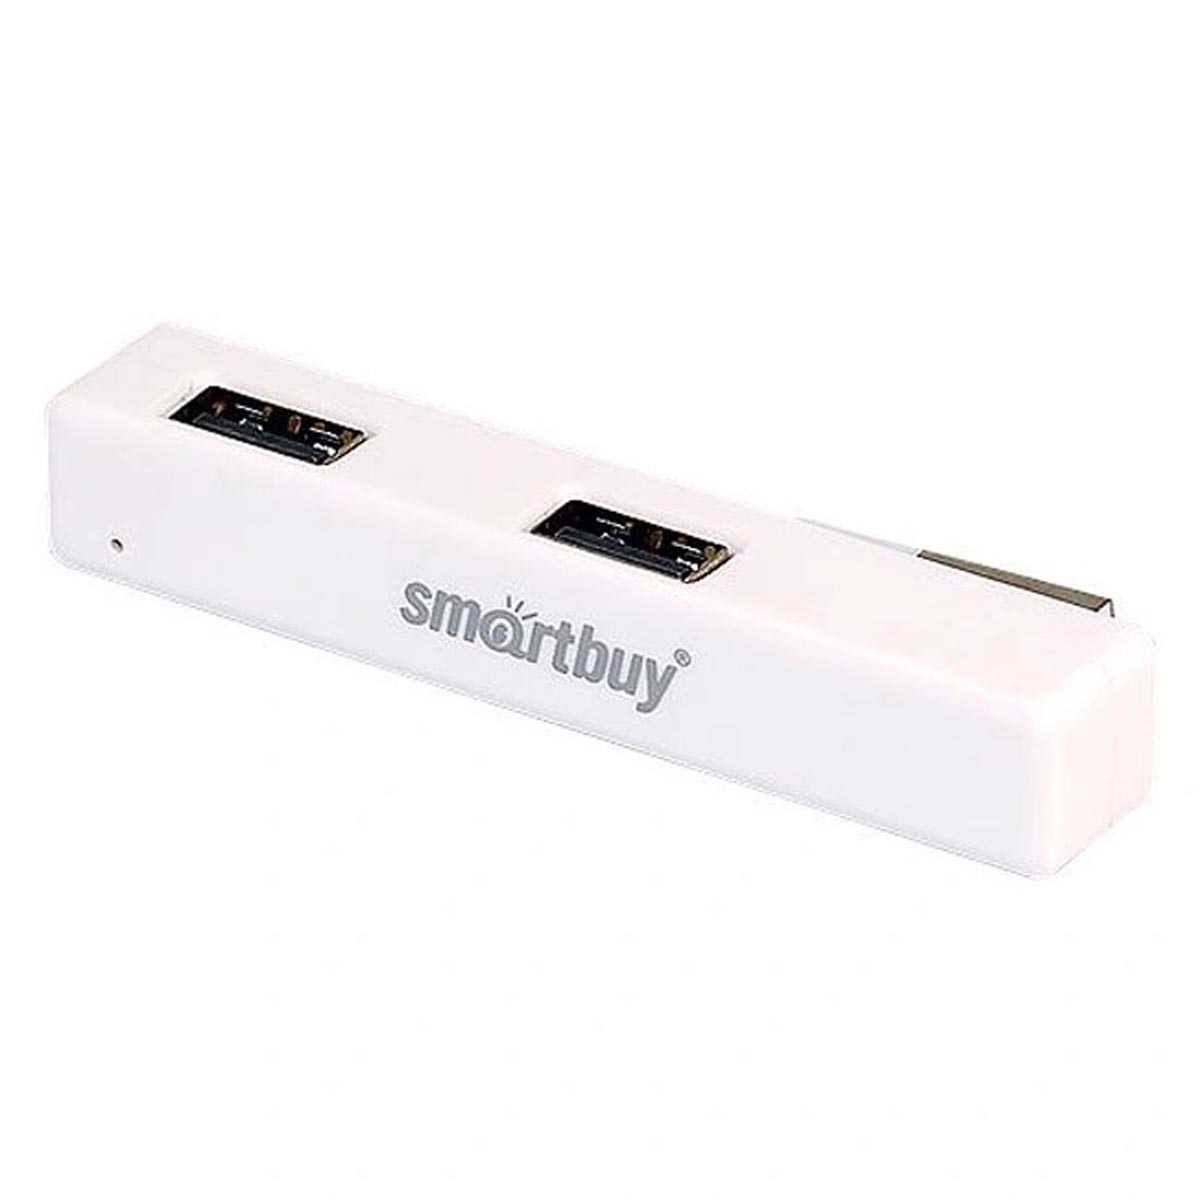 USB - Xaб Smartbuy 408, 4 порта, цвет белый